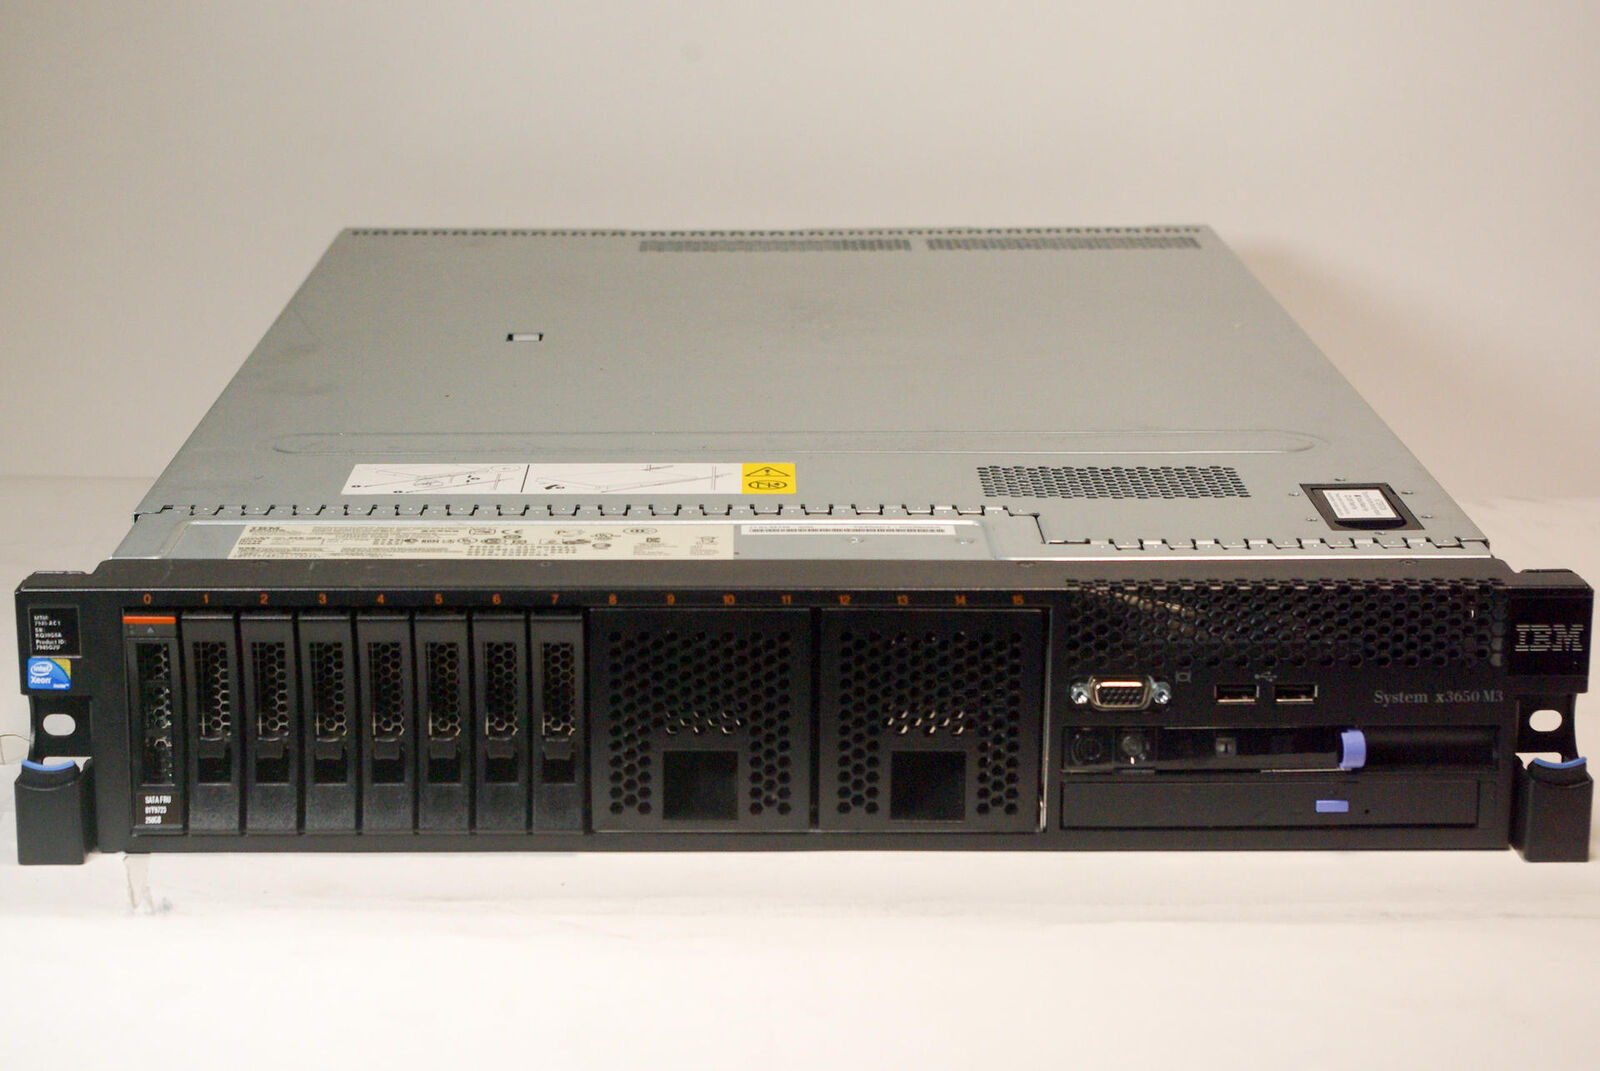 IBM System x3650M3 Server Dual E5640 4 Core 2.67GHZ 96GB DDR3 1x 250GB SATA